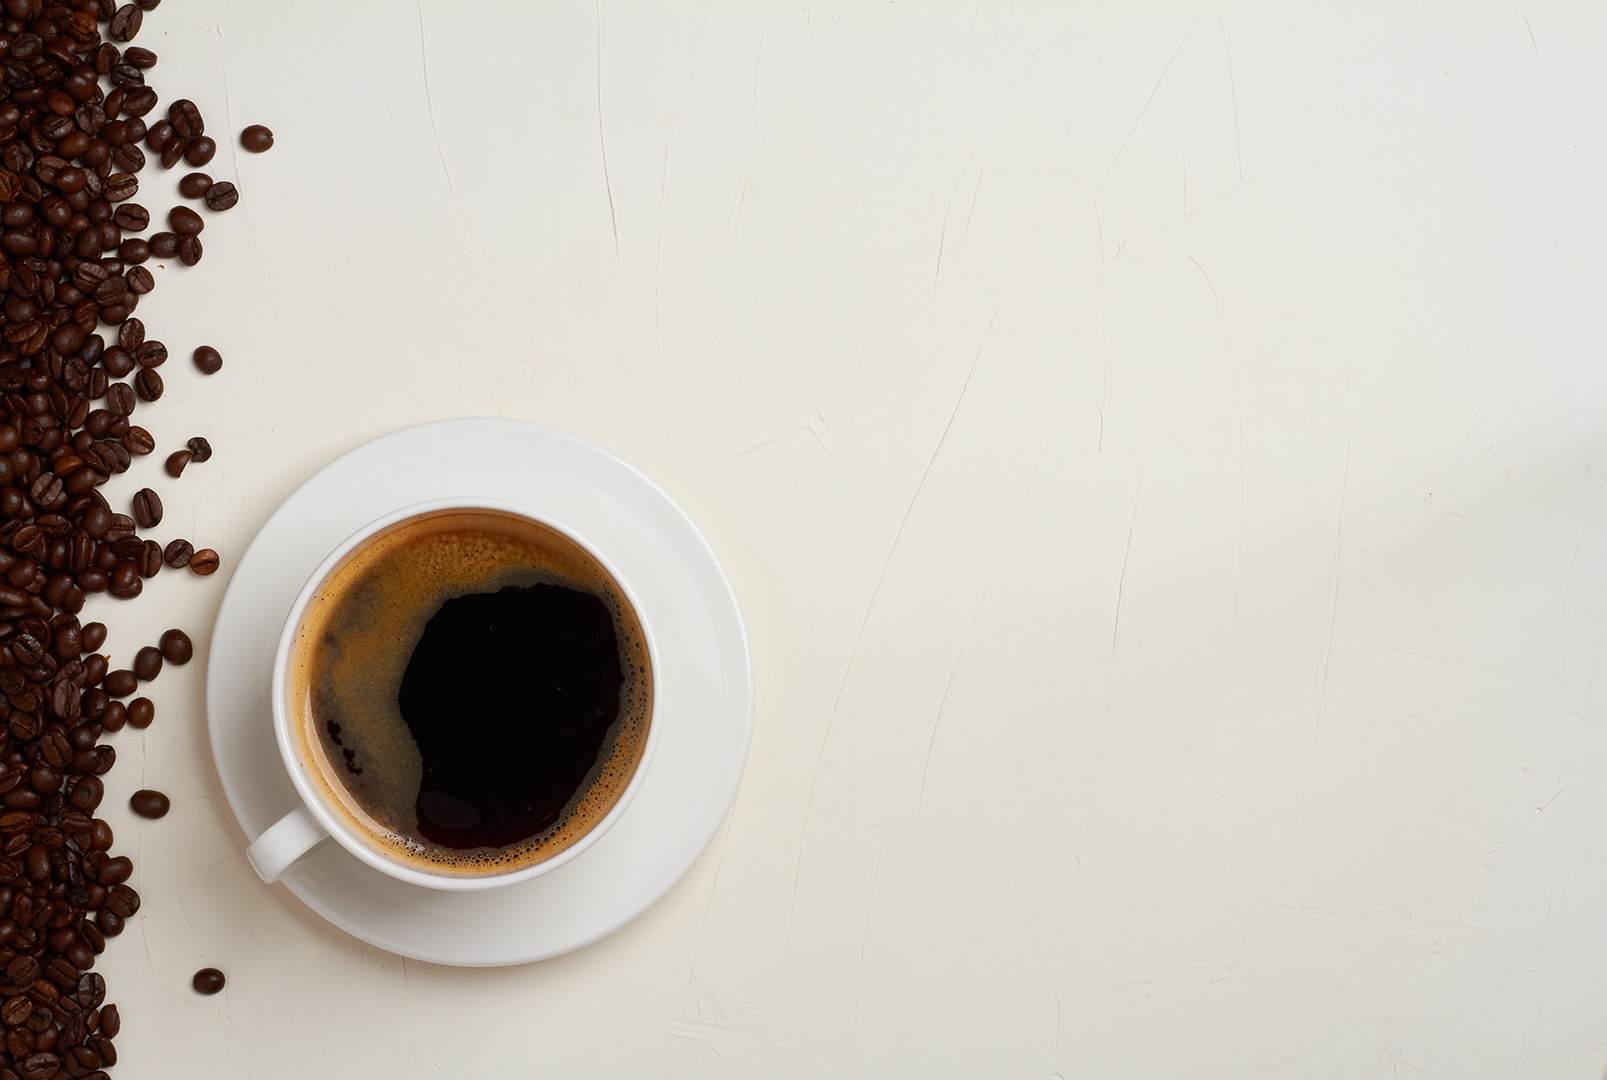 El café podría reducir el riesgo de muerte por derrame cerebral y enfermedad cardíaca